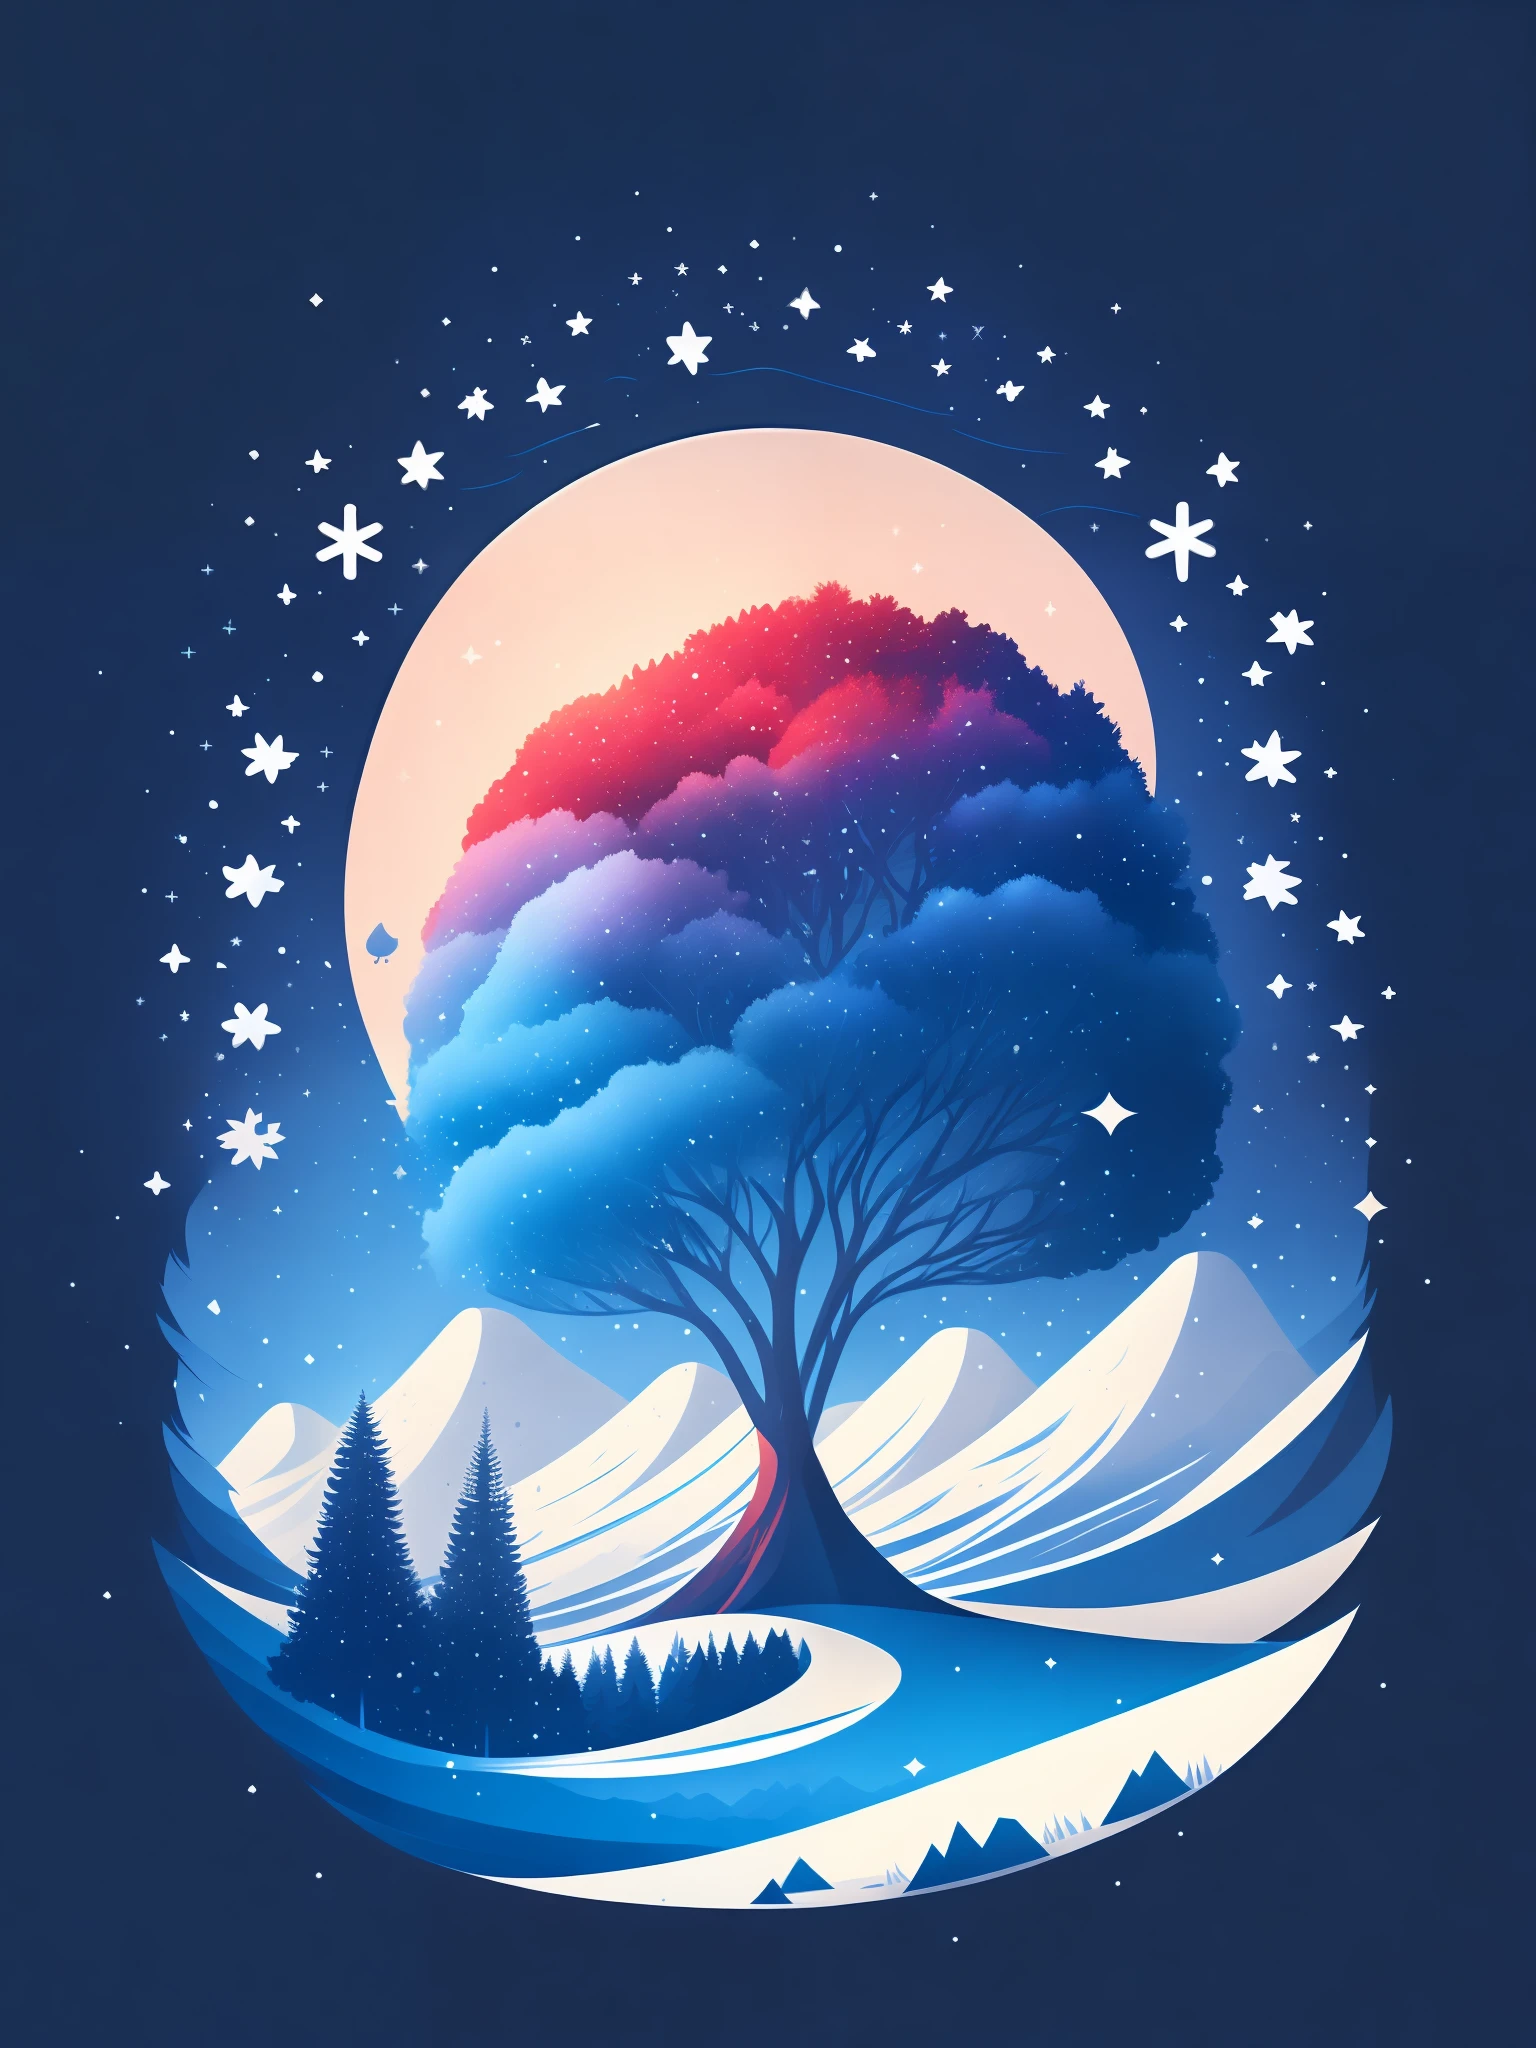 شجرة التنوب في المناظر الطبيعية في فصل الشتاء, تصميم التي شيرت, com.rzminjourney, مكافحة ناقلات الفن